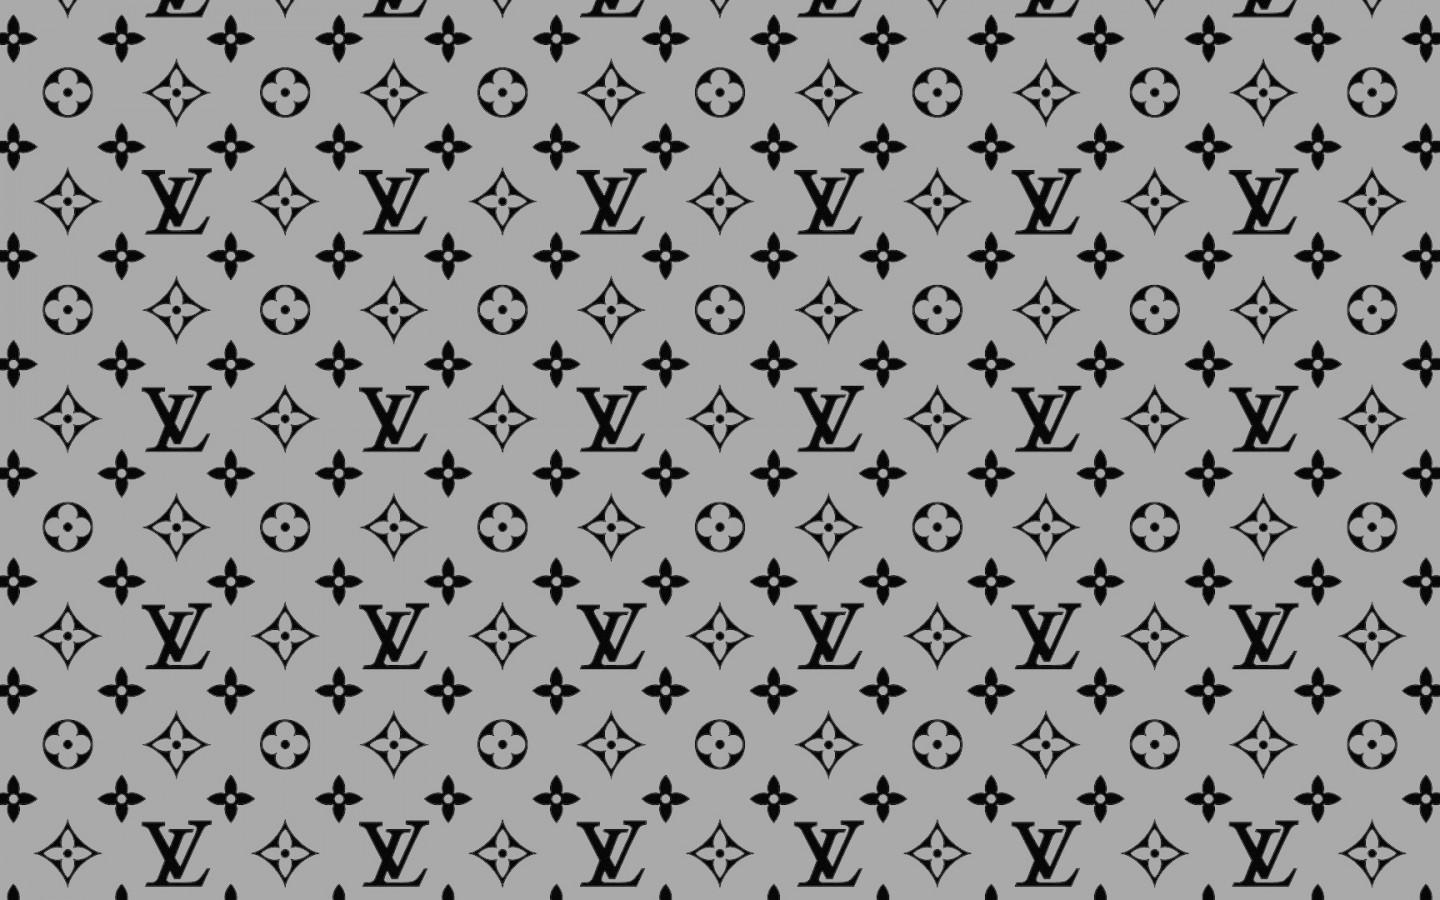 Aesthetic on X: Louis Vuitton aesthetic wallpaper; #louisvuitton